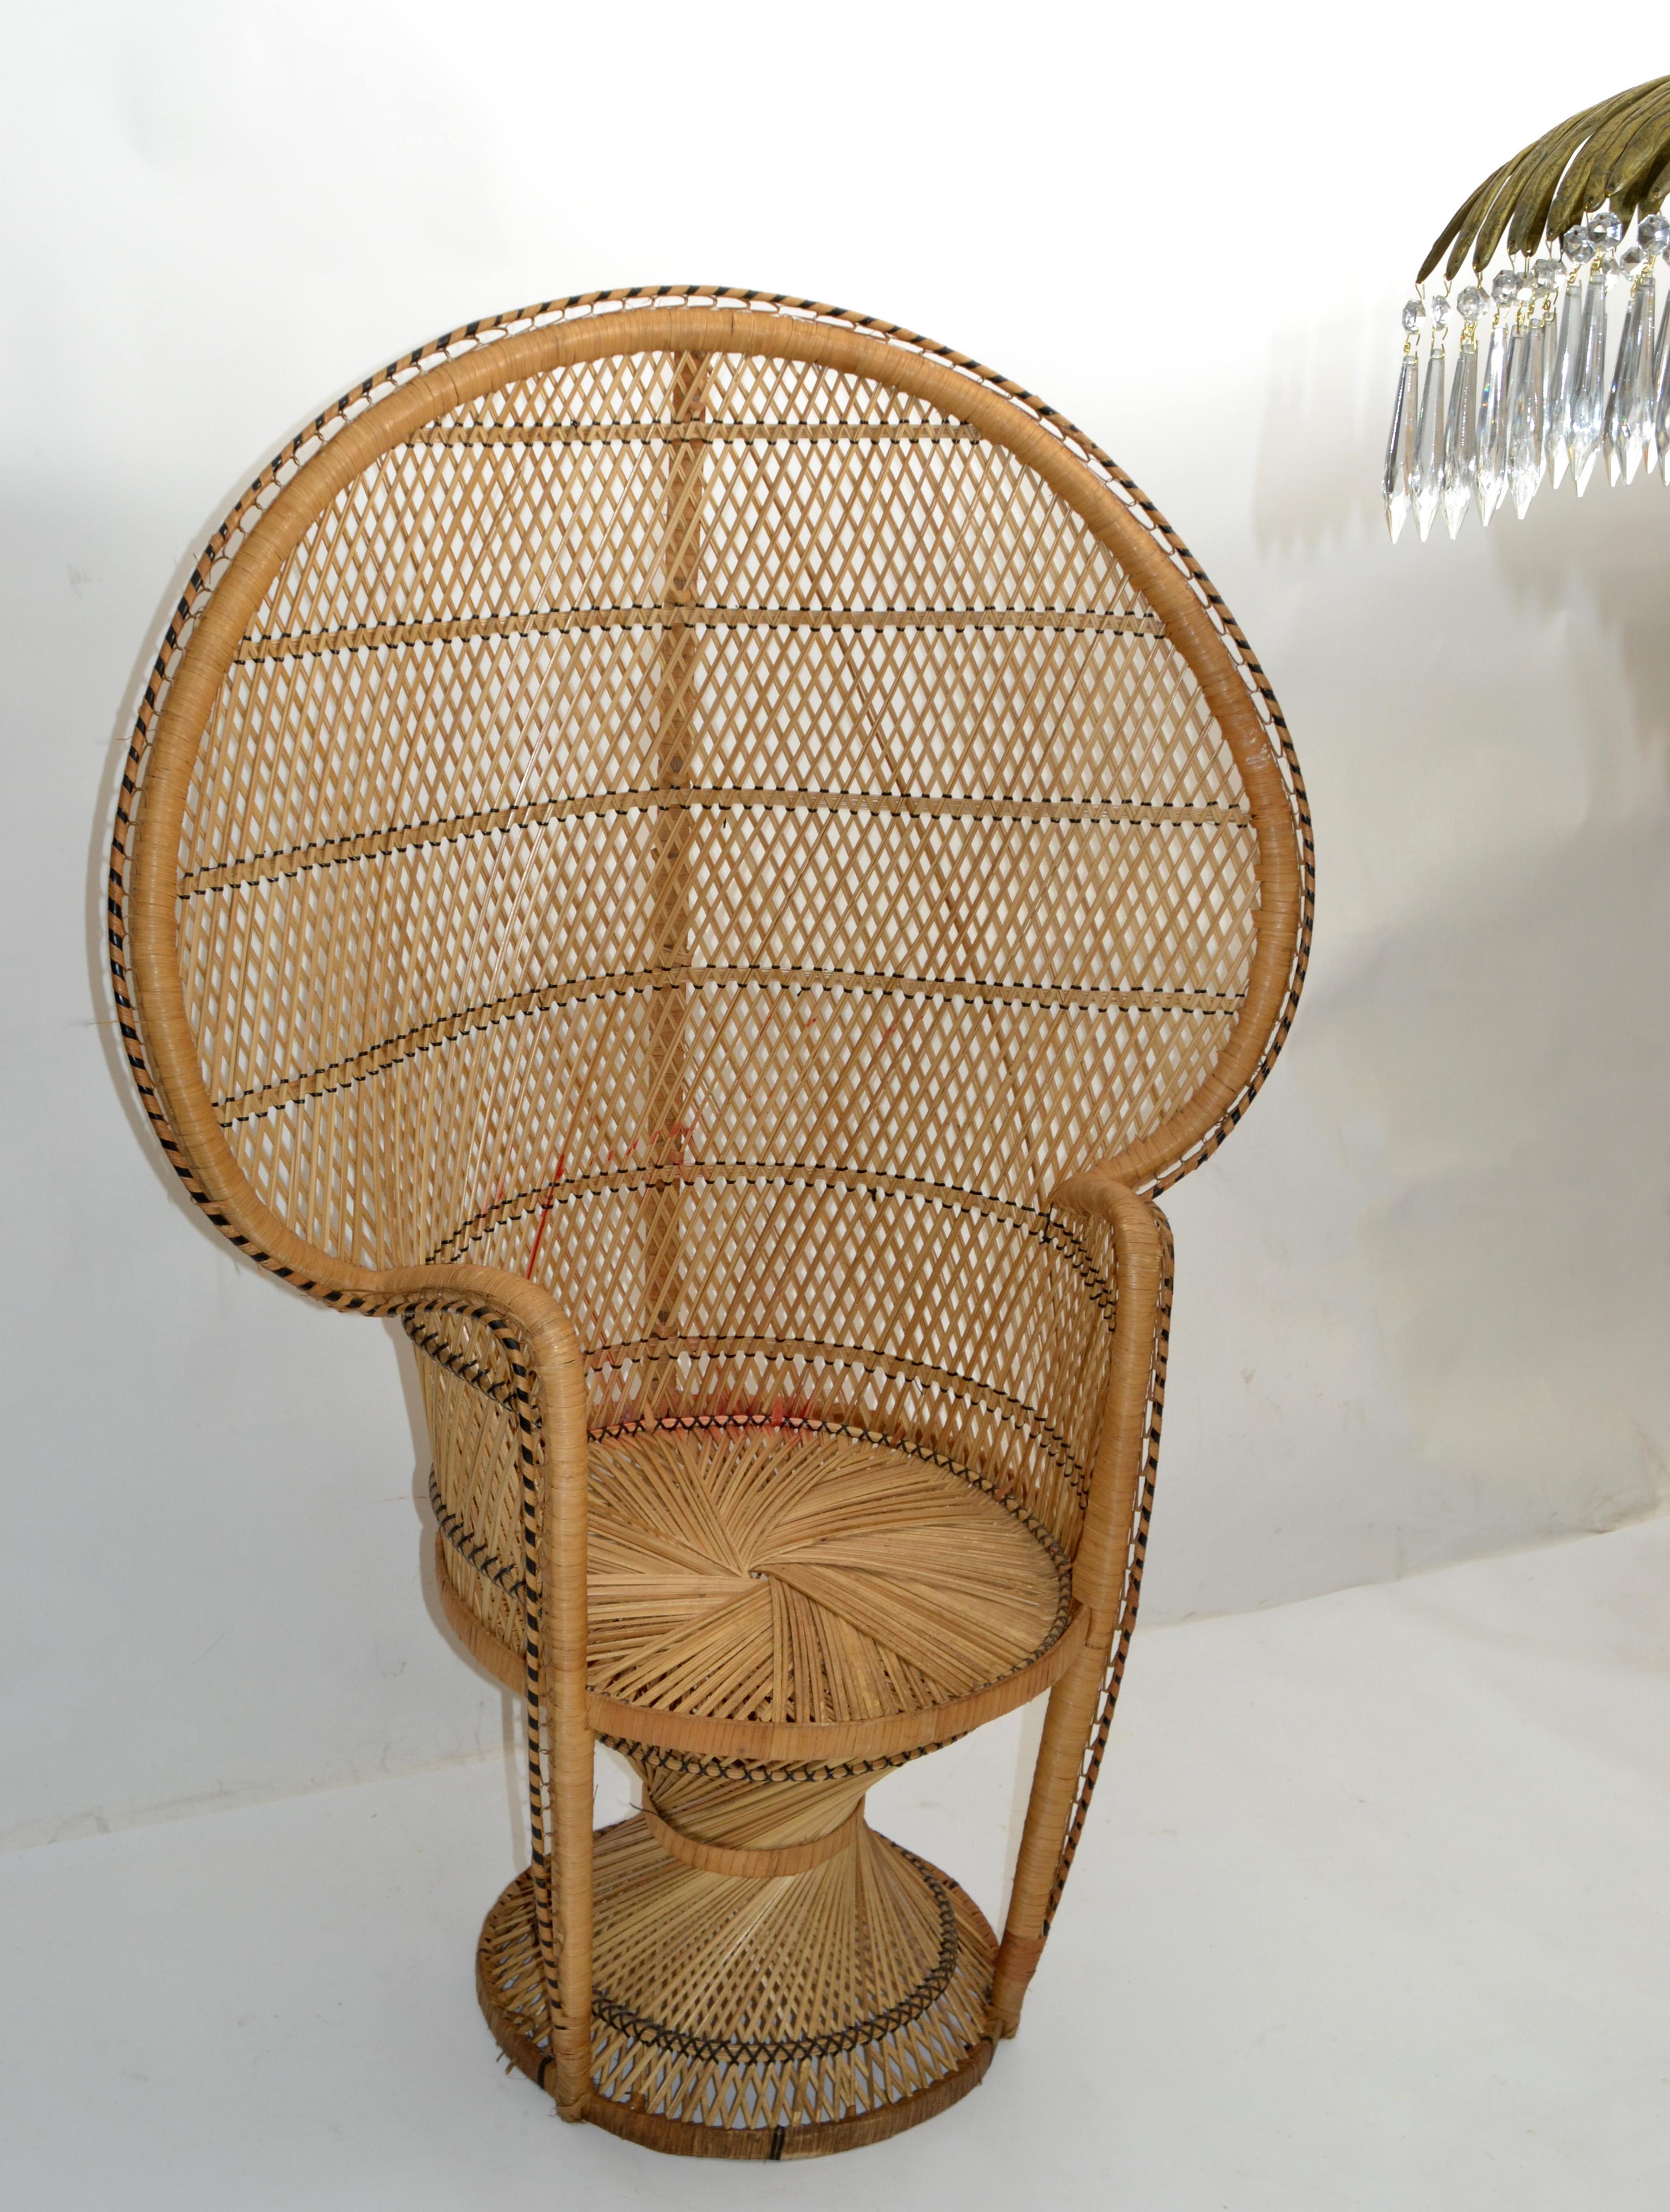 Superbe chaise vintage Boho Chic beige et noire, tissée à la main, datant des années 1970.
Veuillez noter les détails et les différentes techniques de cette chaise. 
Fabriqué en osier, rotin et roseau.
Idéal pour un usage intérieur et